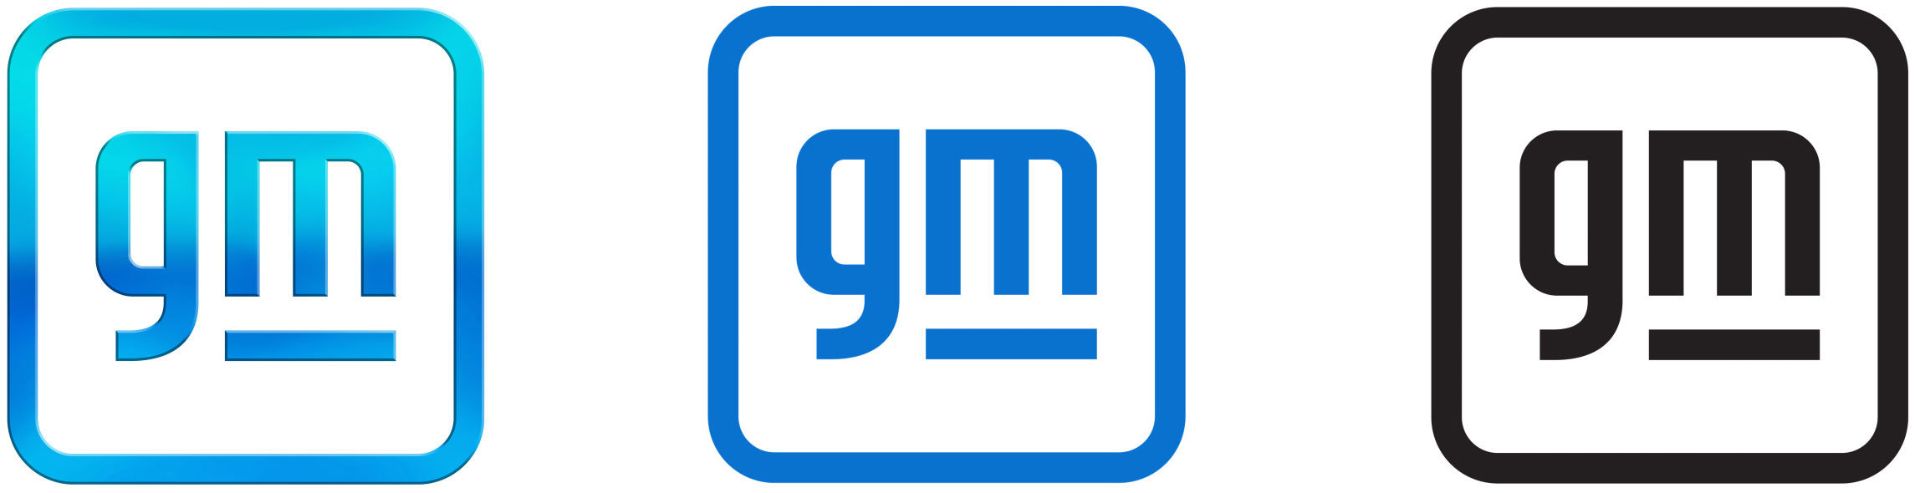 لوگو جدید جنرال موتورز / GM تمام نسخه ها رنگ آبی ساده و آبی گرادیانی و مشکی